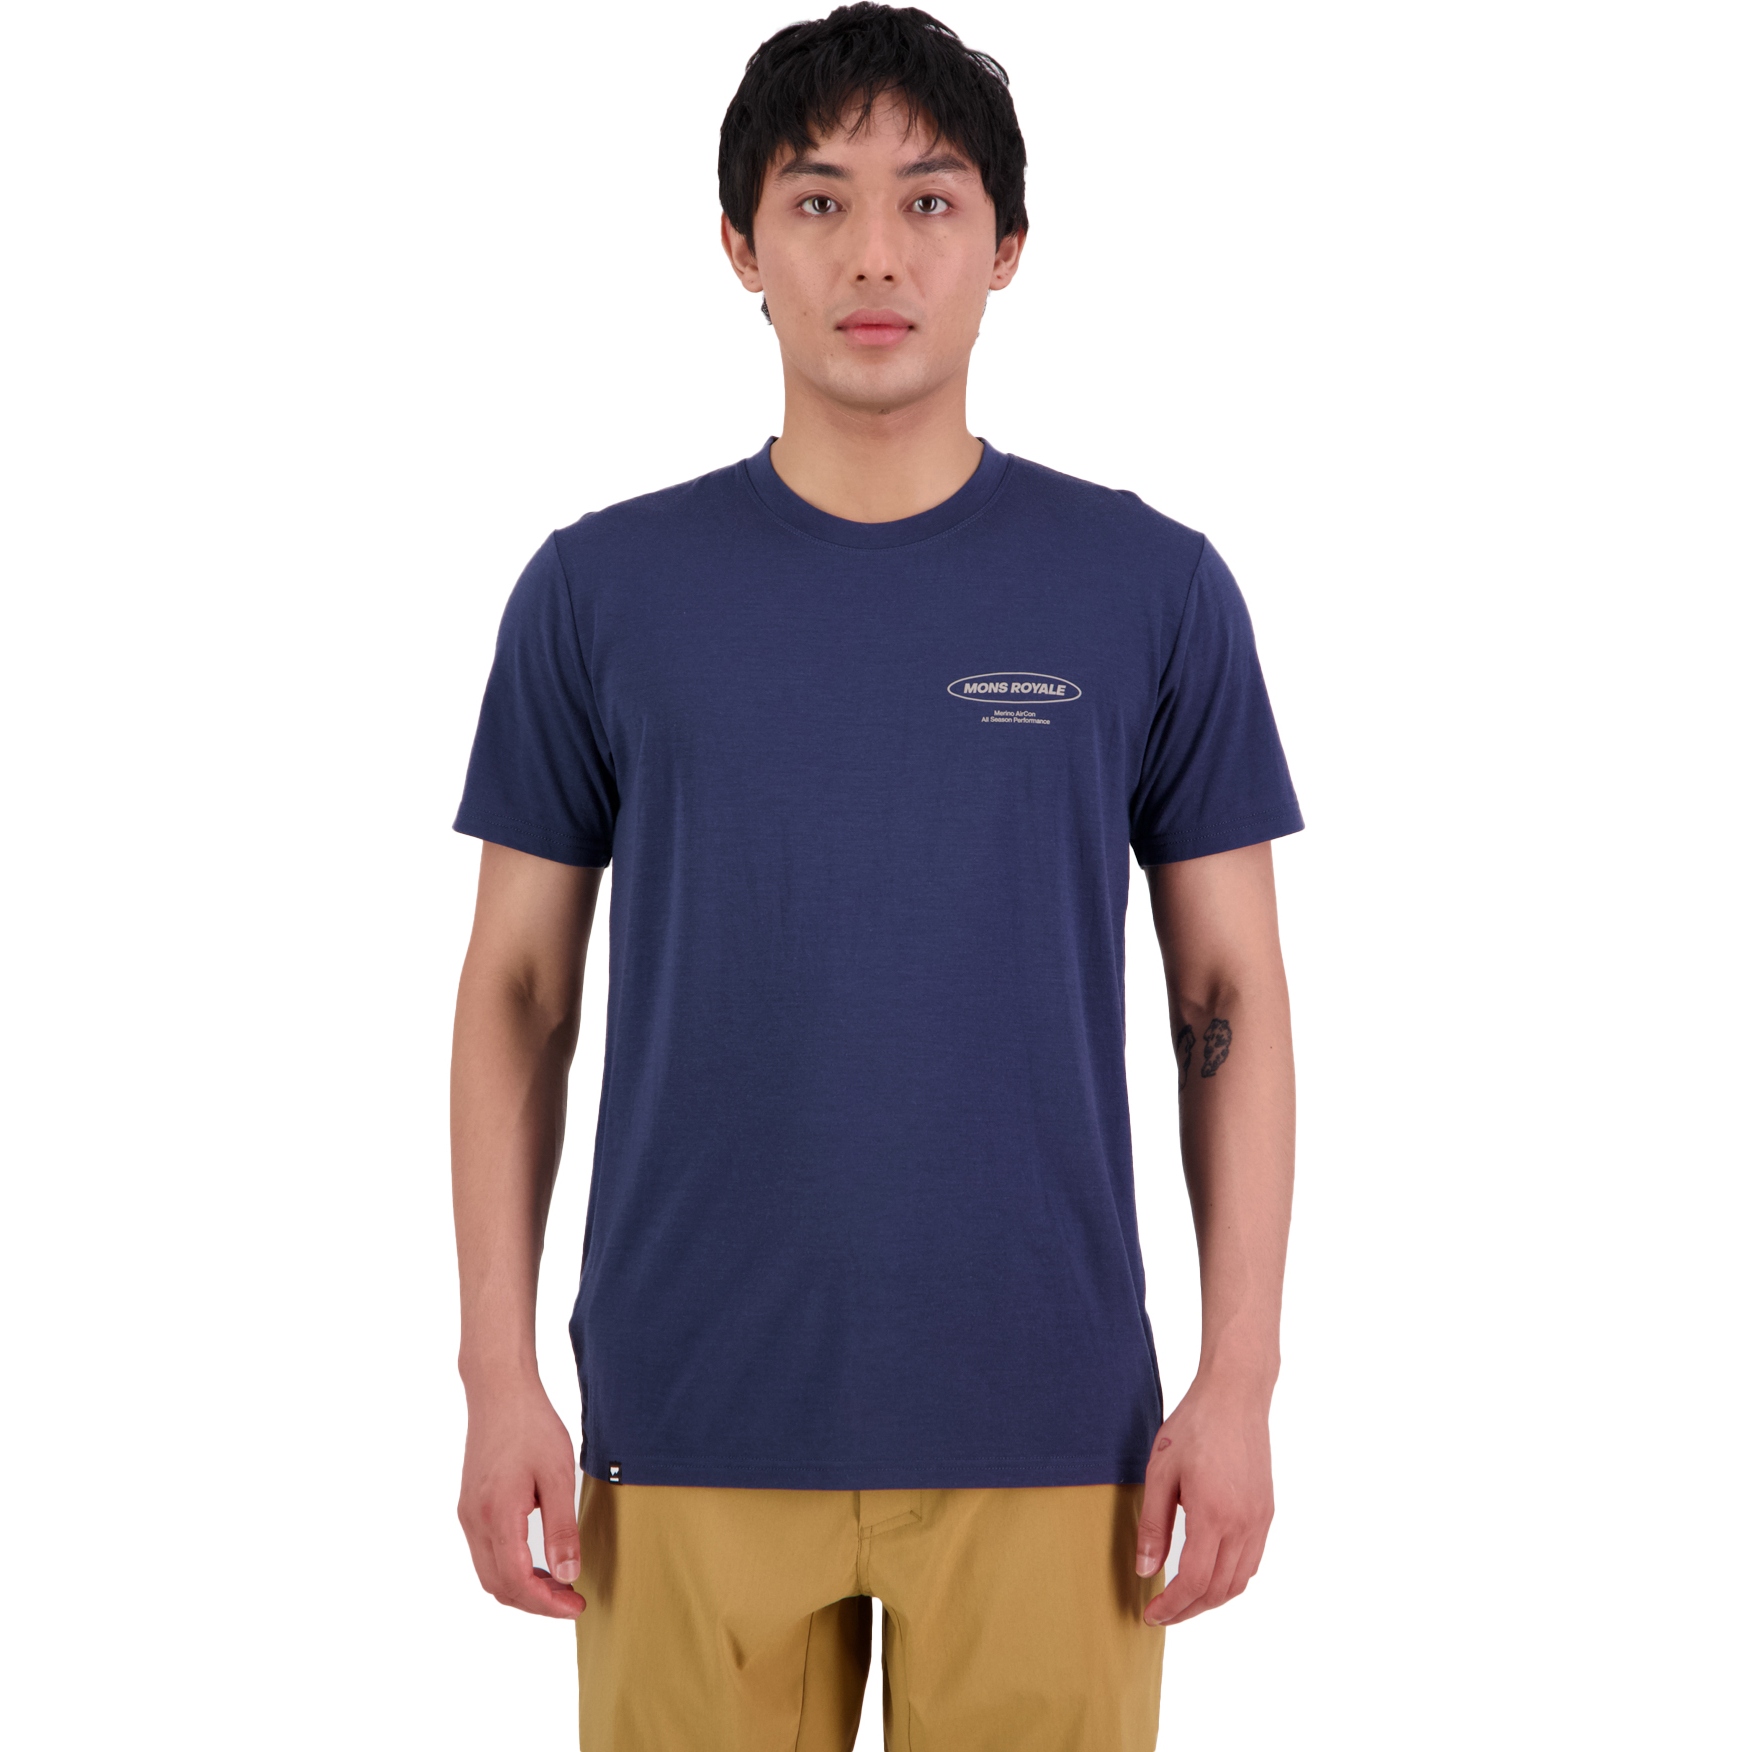 Produktbild von Mons Royale Icon Merino Air-Con T-Shirt Herren - midnight